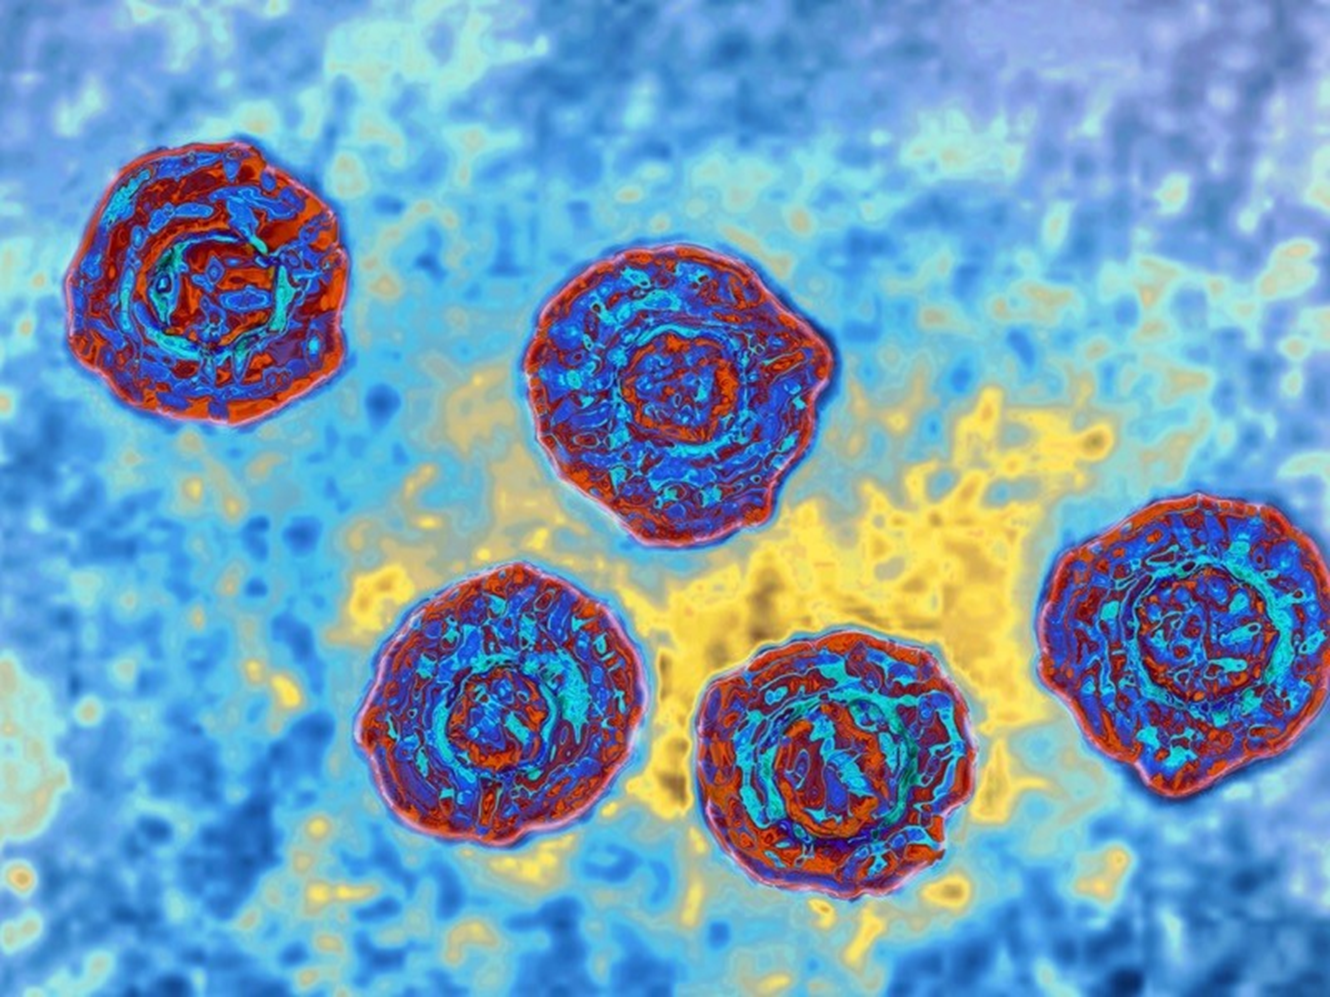 Hình ảnh của virus viêm gan C qua kính hiển vi điện tử quét truyền qua. Ảnh: Cavallini James/BSIP/SPL